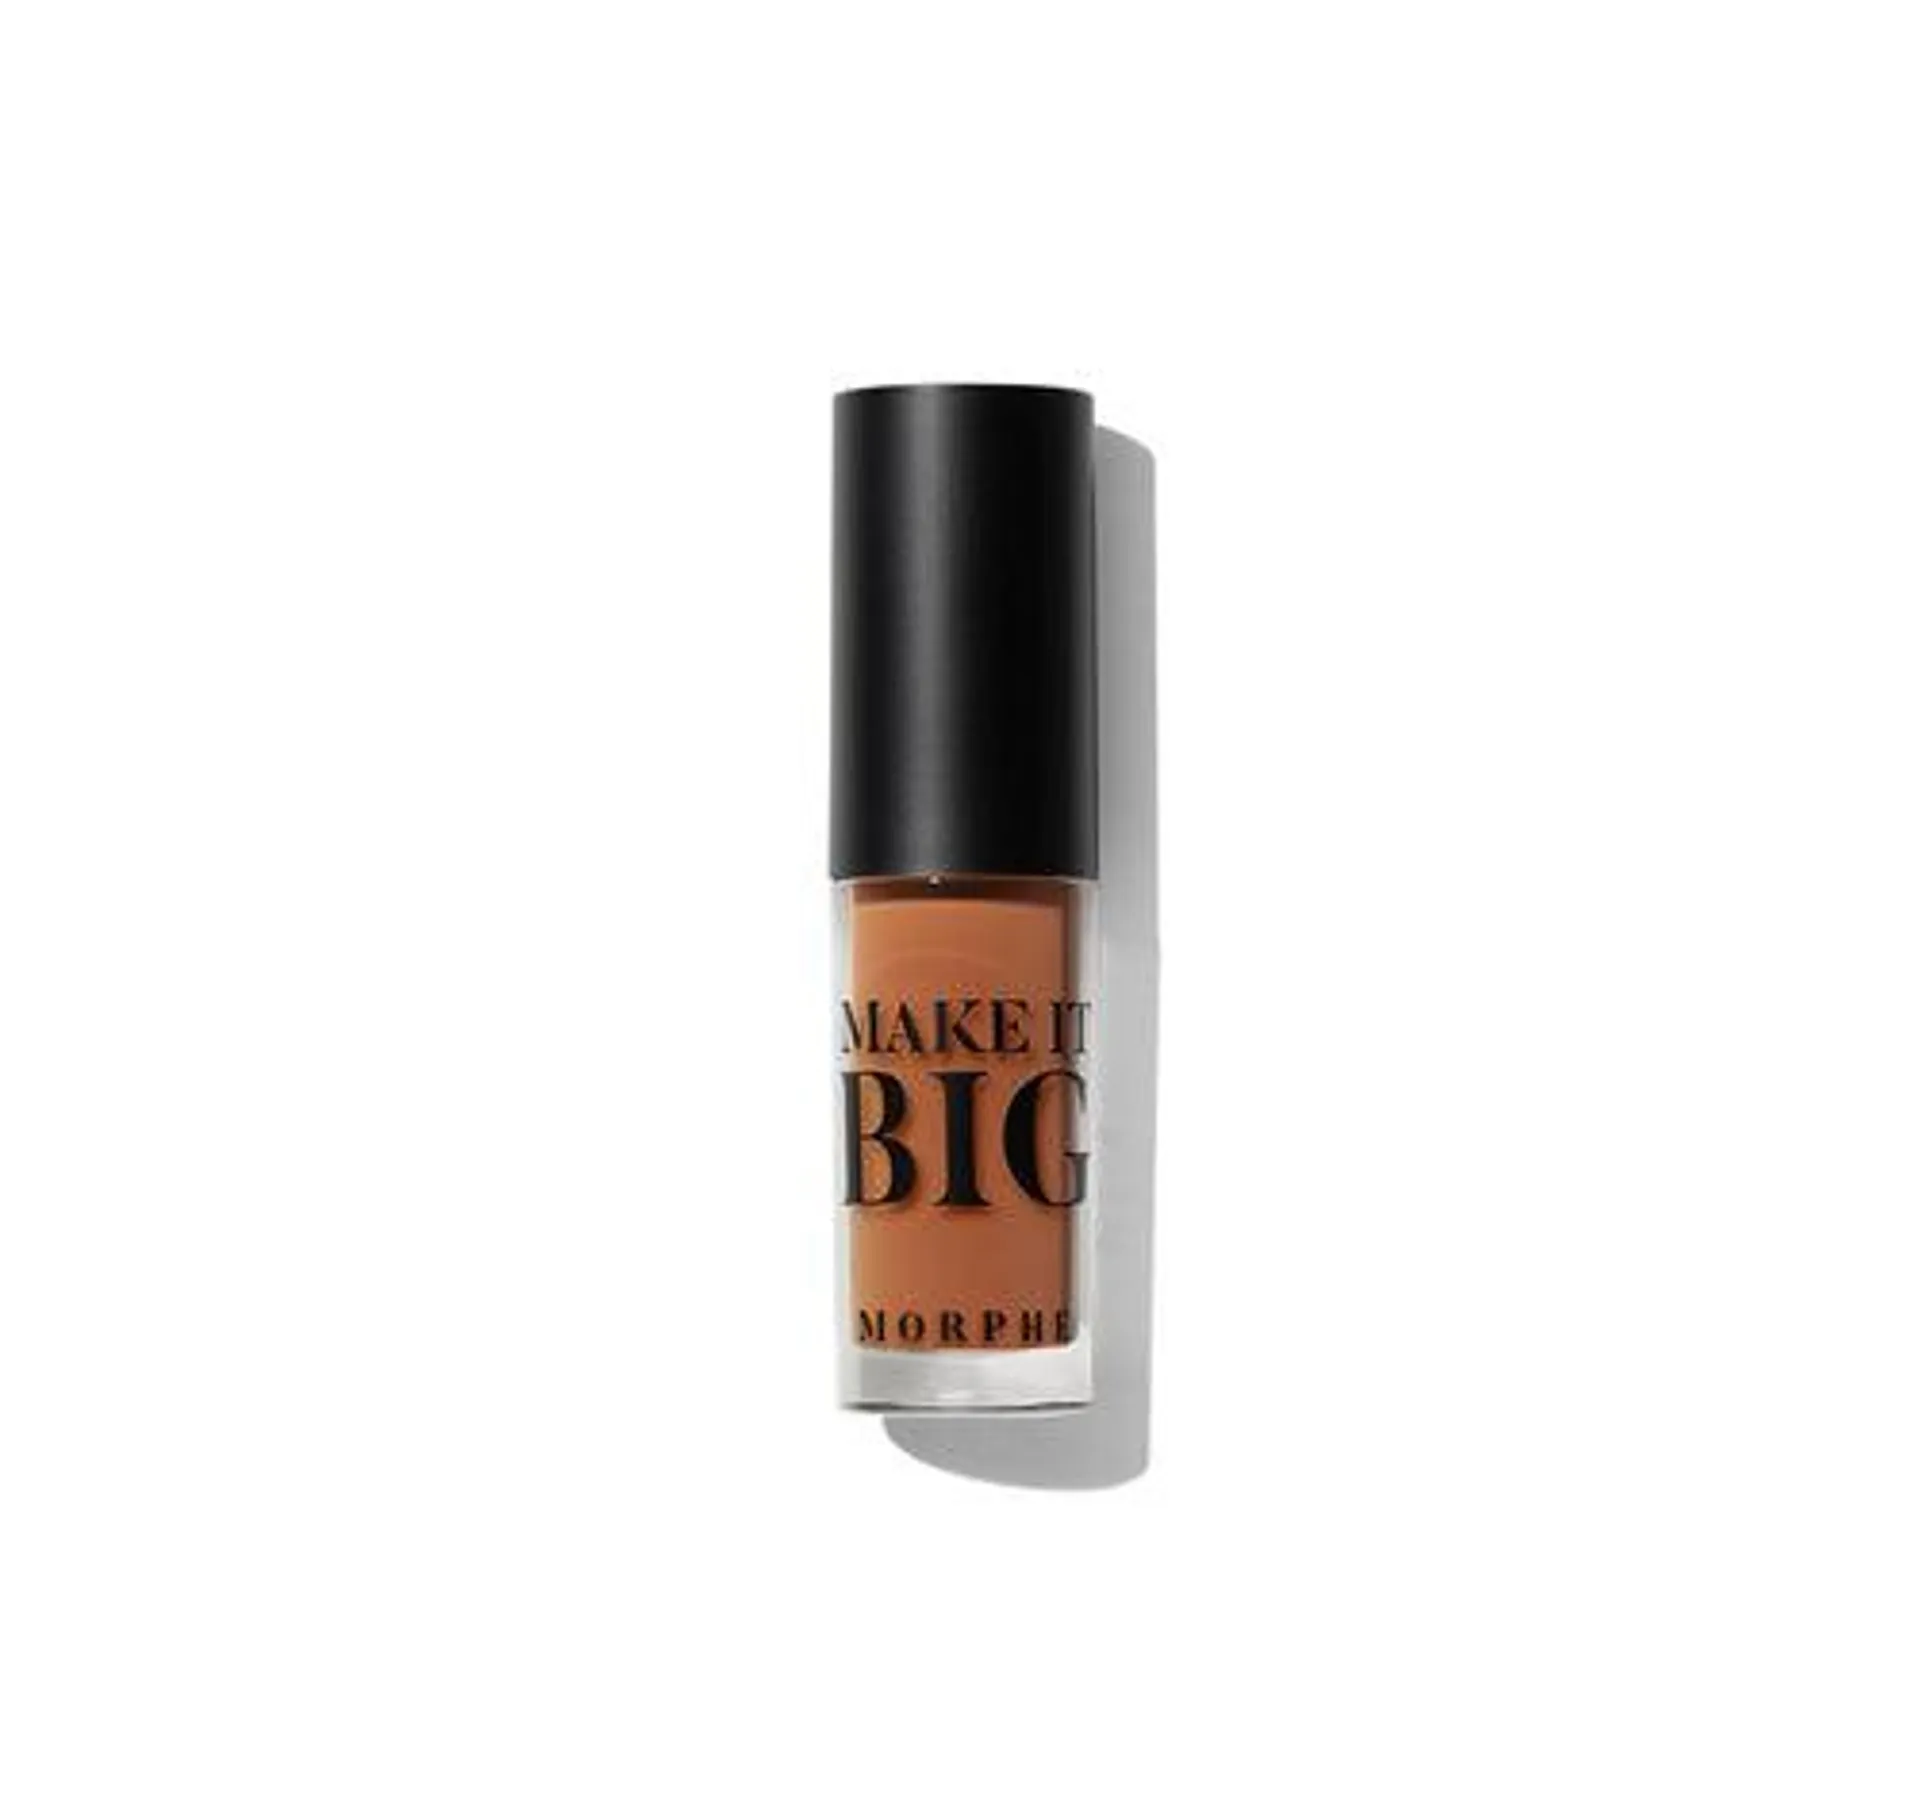 Make It Big Plumping Lip Gloss - Showy Nude